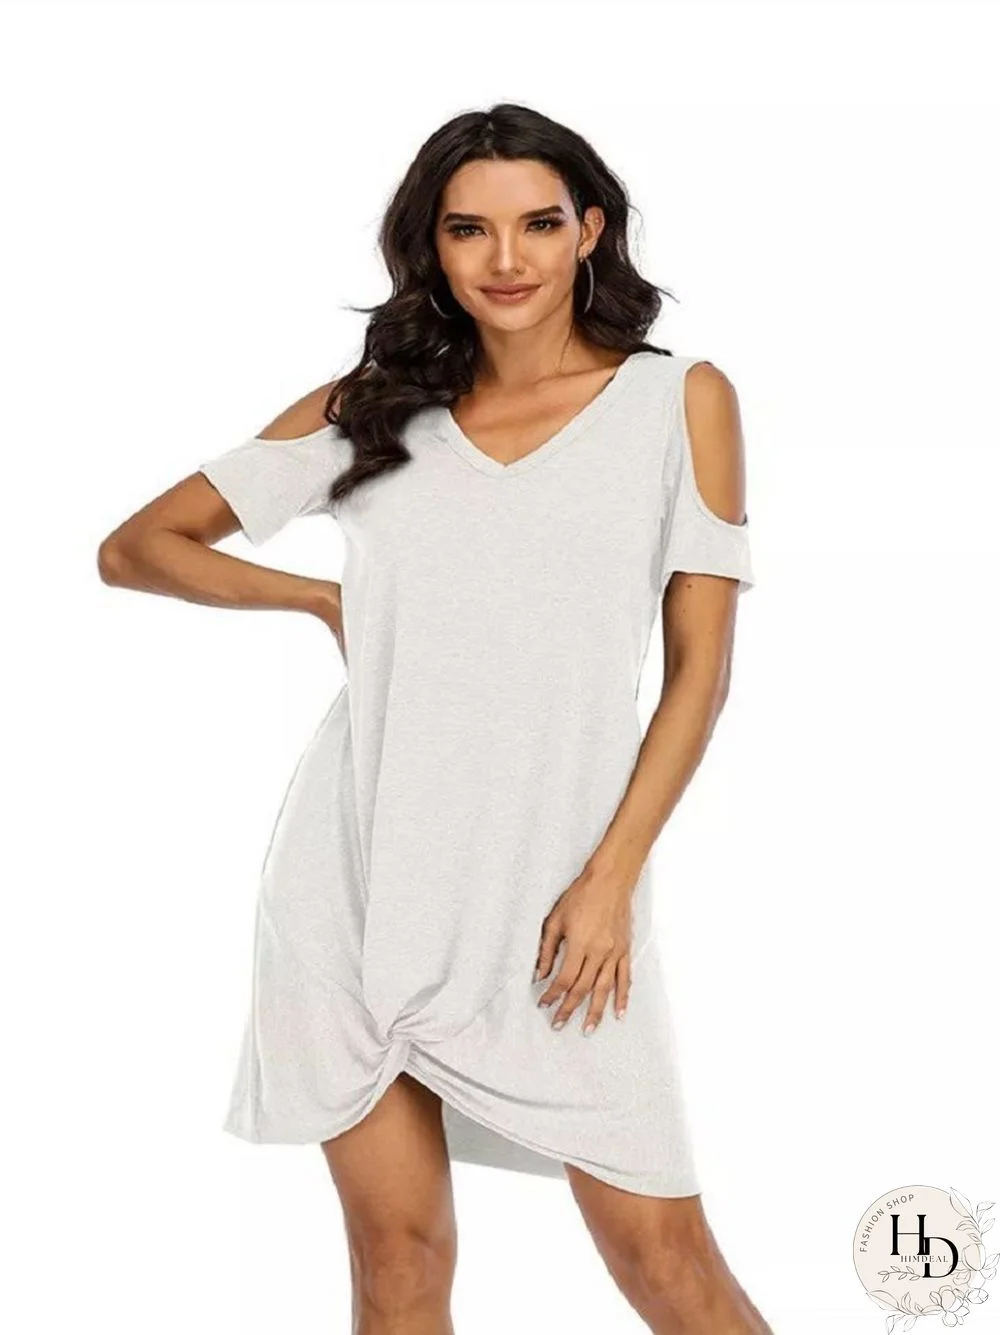 Loose Solid Color Short Sleeve V-neck T-shirt Dress White Dresses